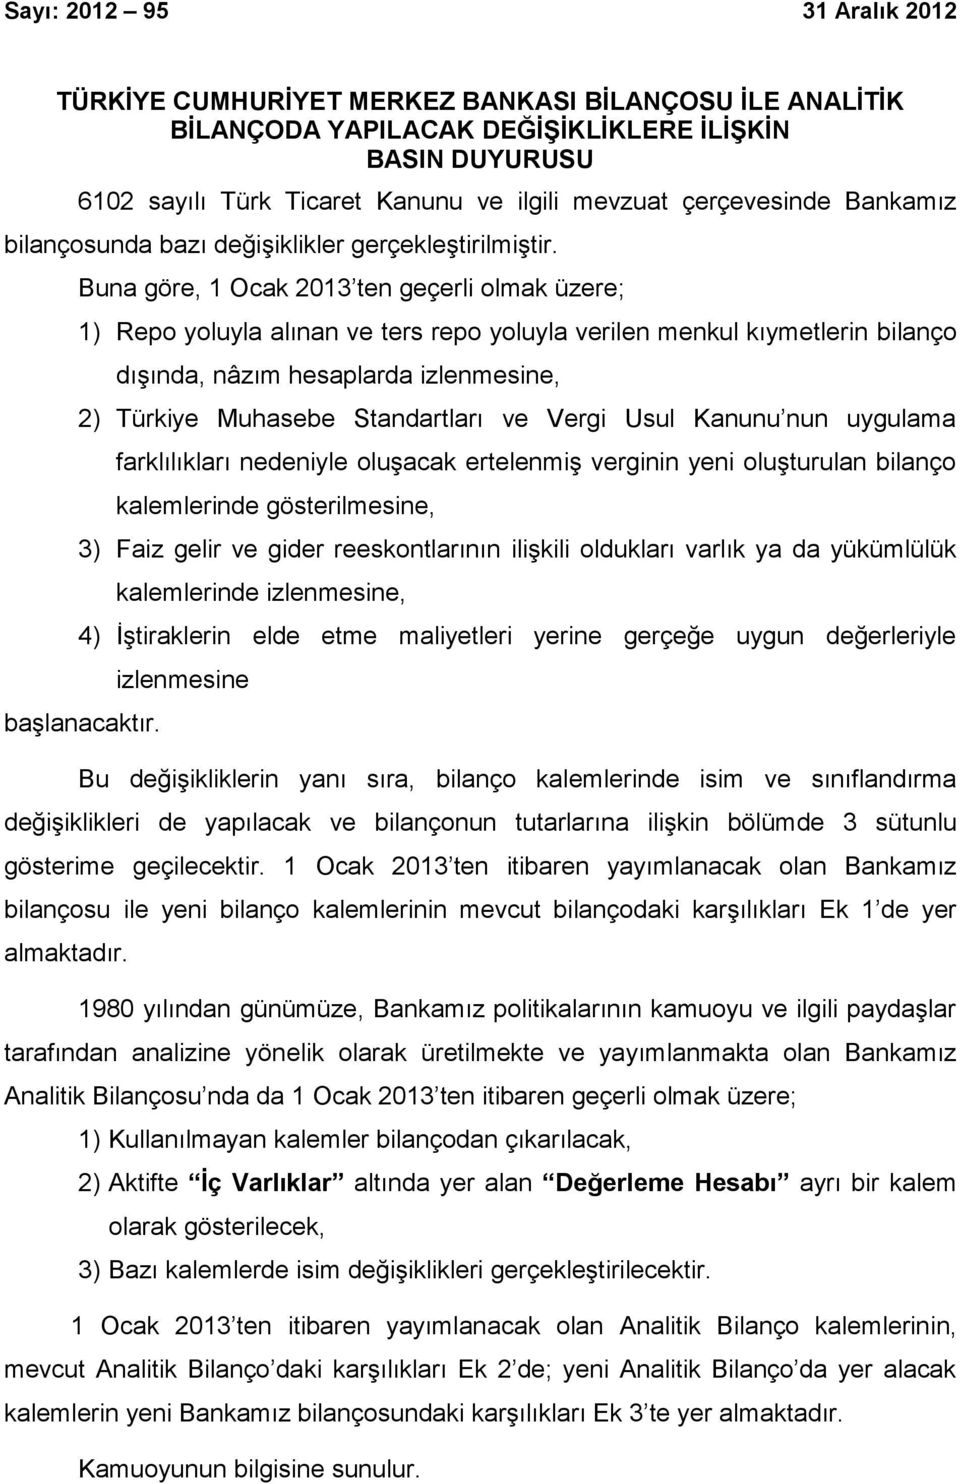 Buna göre, 1 Ocak 2013 ten geçerli olmak üzere; 1) Repo yoluyla alınan ve ters repo yoluyla verilen menkul kıymetlerin bilanço dışında, nâzım hesaplarda izlenmesine, 2) Türkiye Muhasebe Standartları